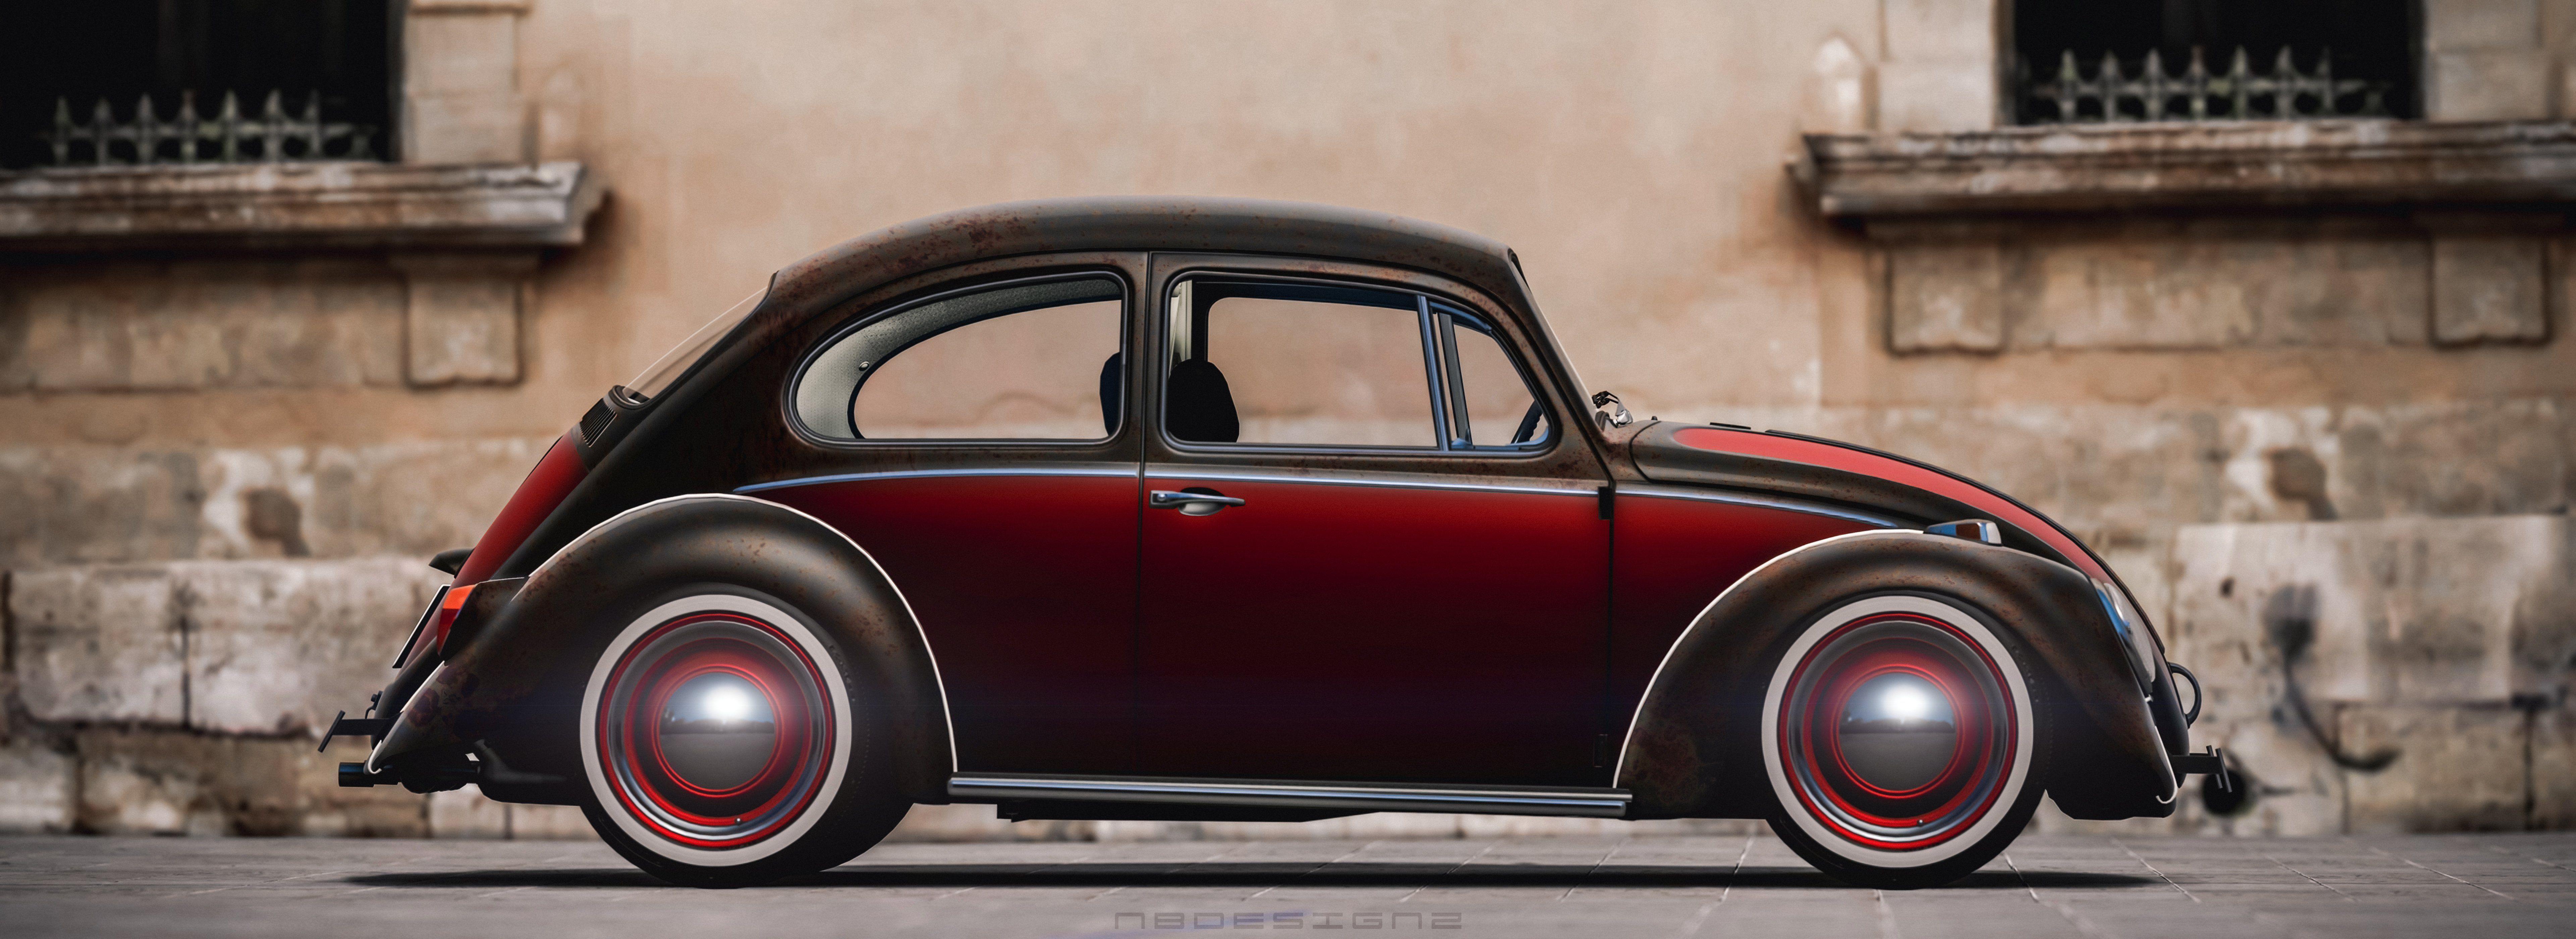 VW Beetle KA wallpaperx2800